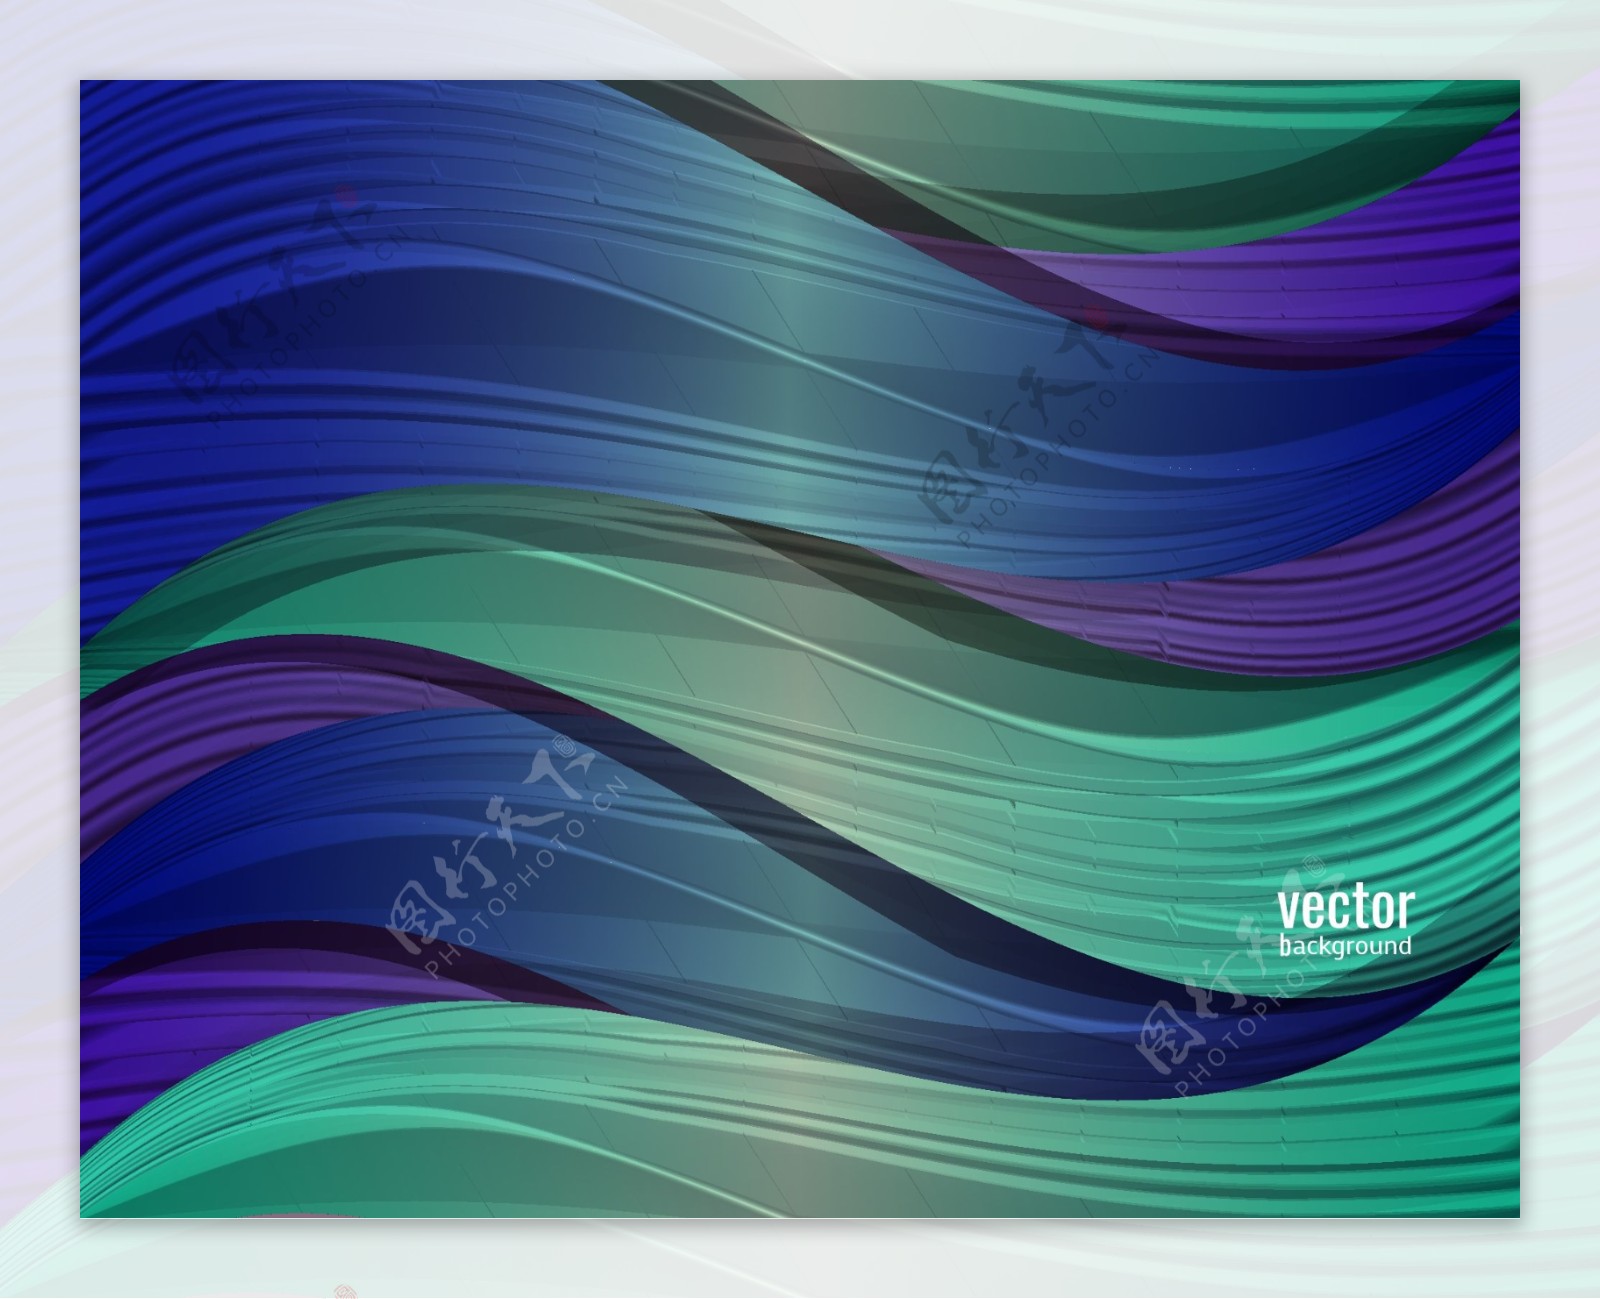 多彩抽象波浪线条背景是矢量素材